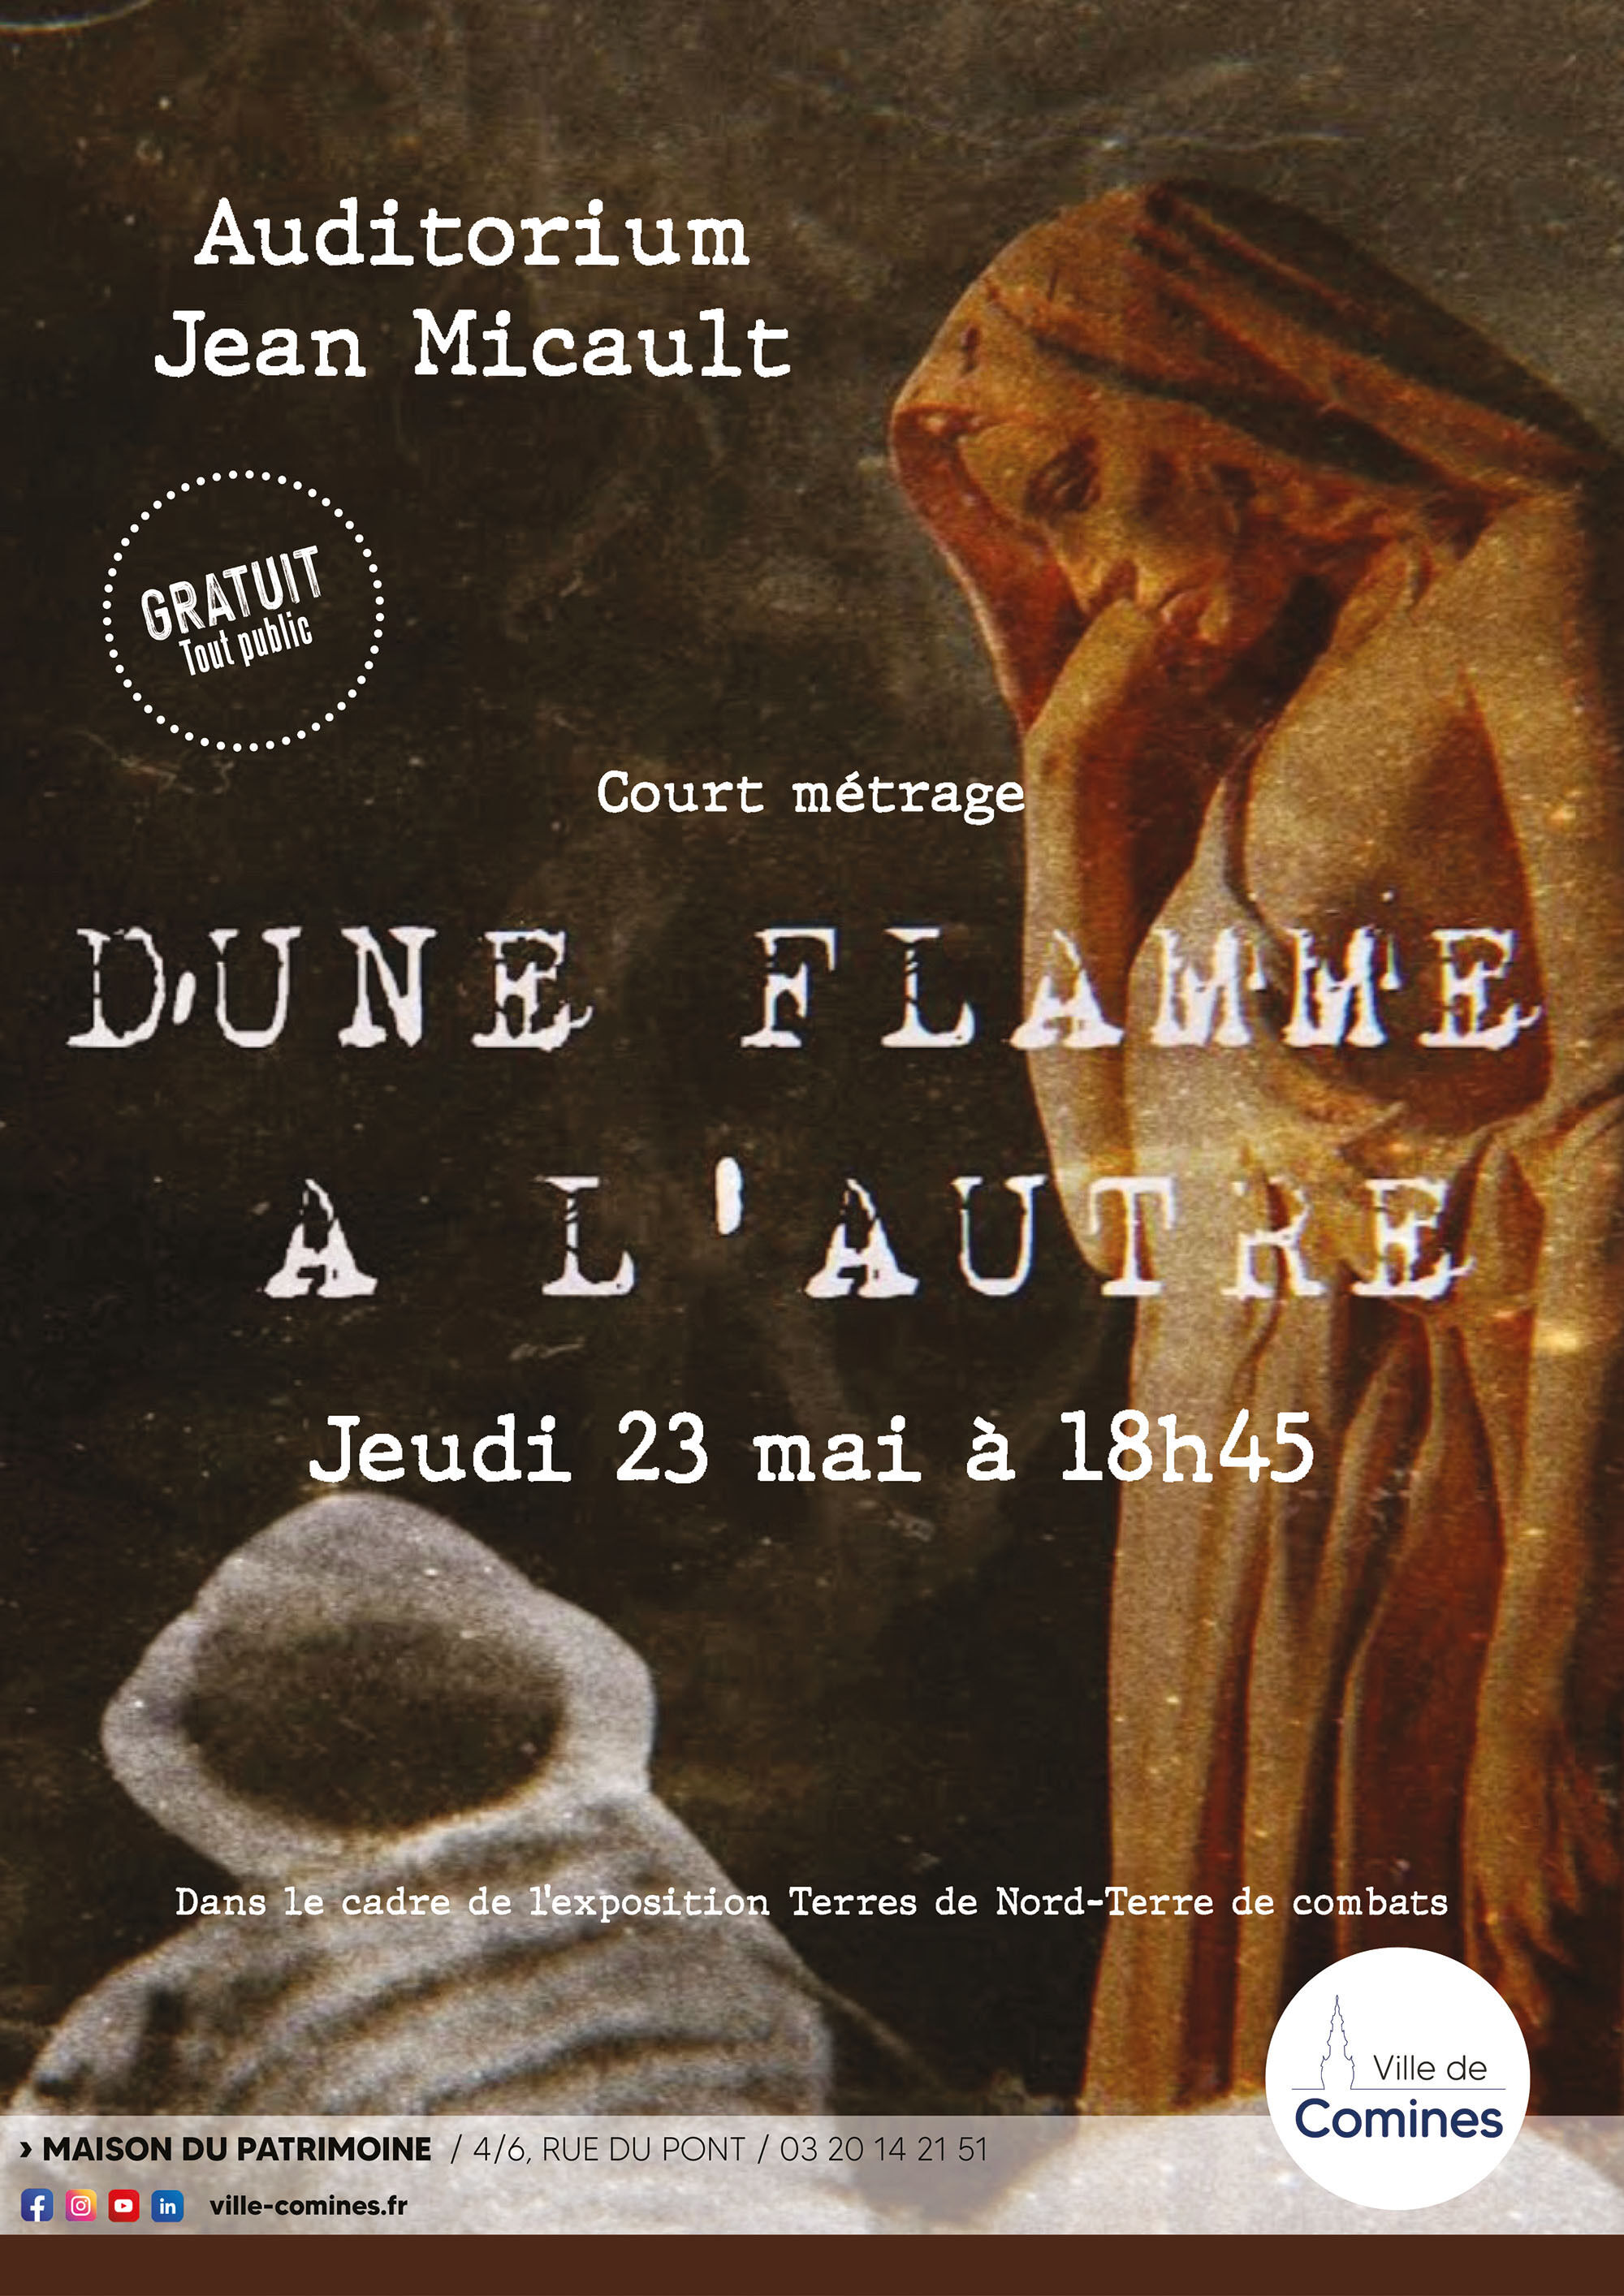 images/affiche_dune_flamme_à_lautre_bd.jpg#joomlaImage://local-images/affiche_dune_flamme_à_lautre_bd.jpg?width=&height=